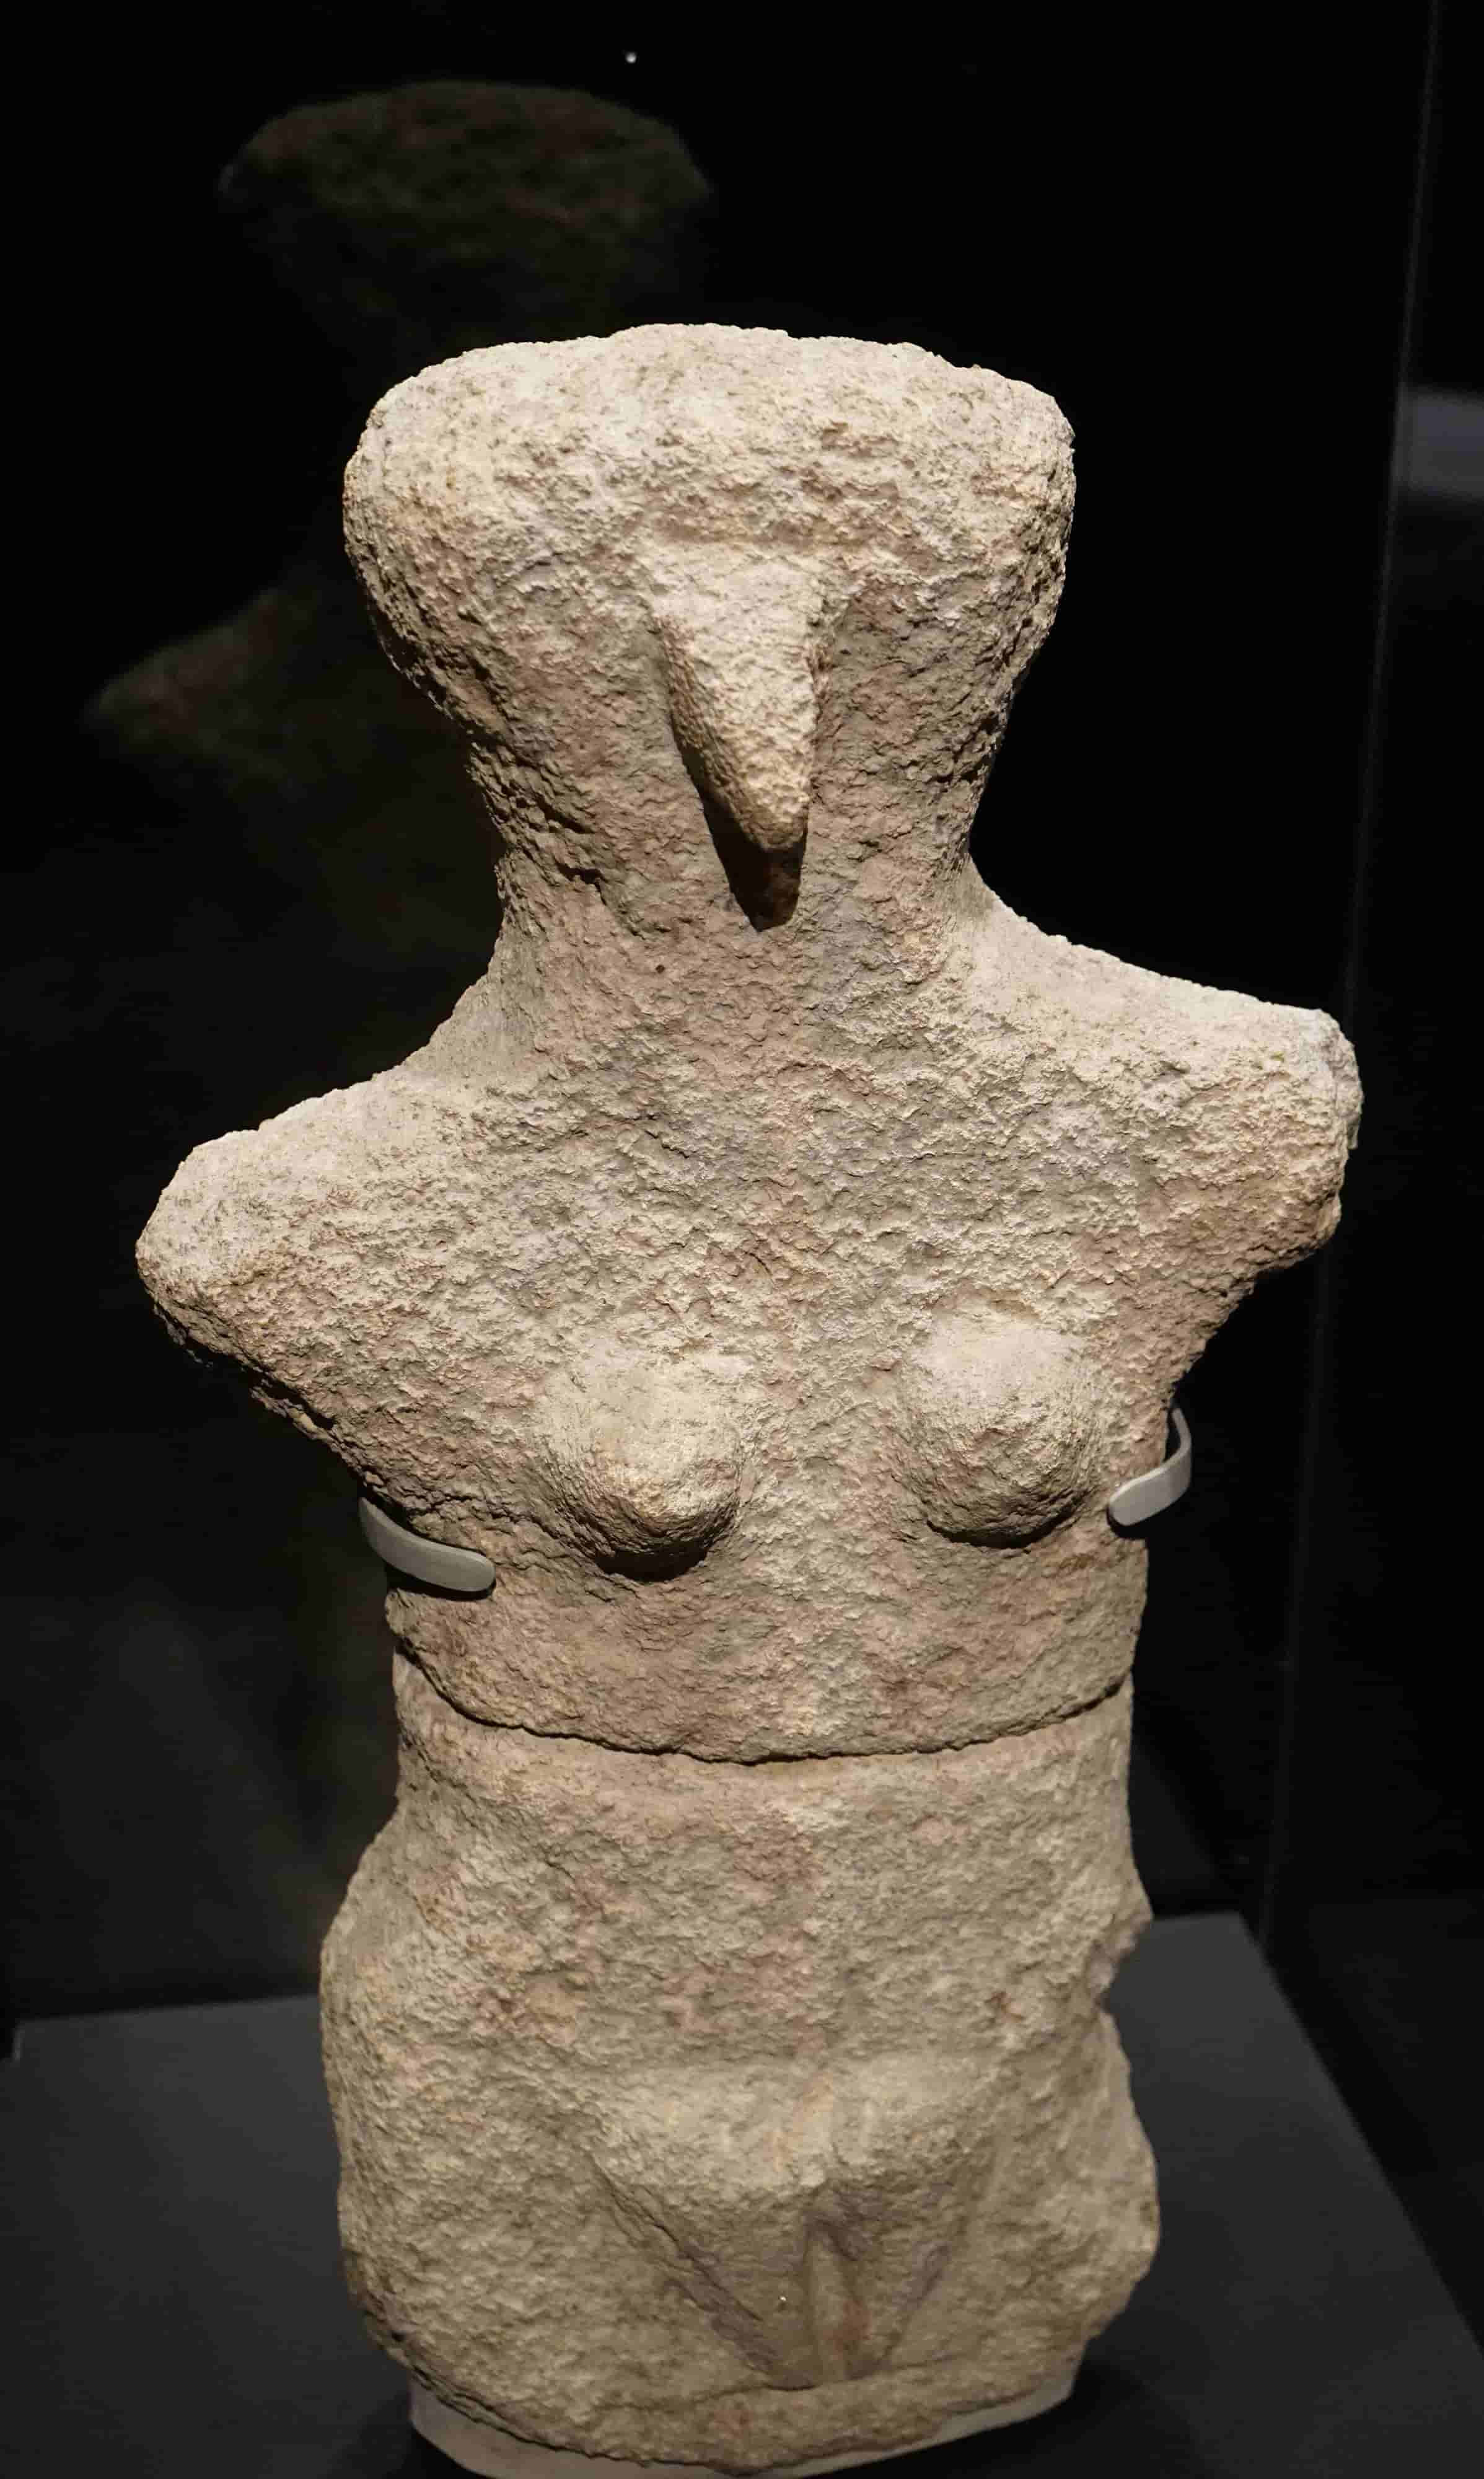 010 喀帕苏斯女性雕像 The Karpathos Lady